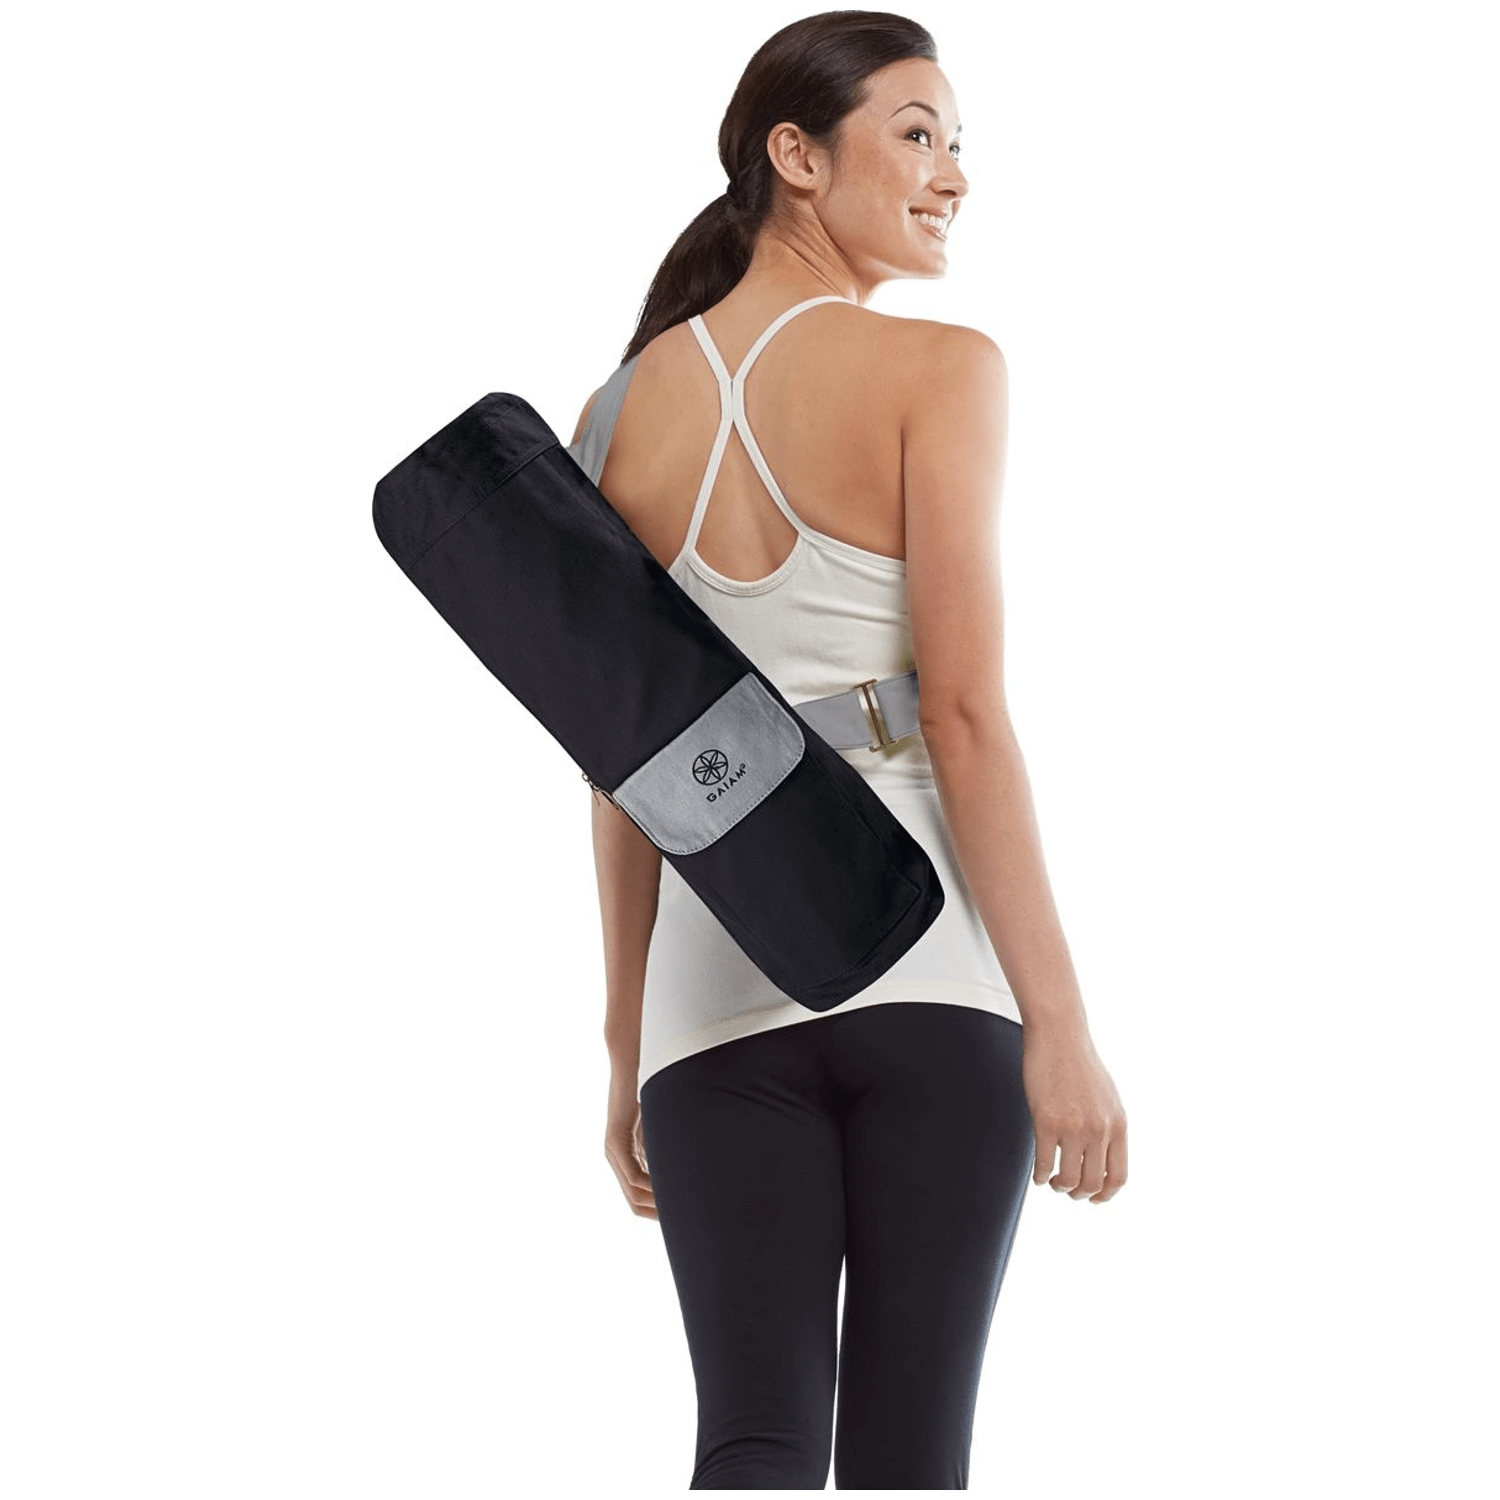 Gaiam Yoga Taschen-Zubehör